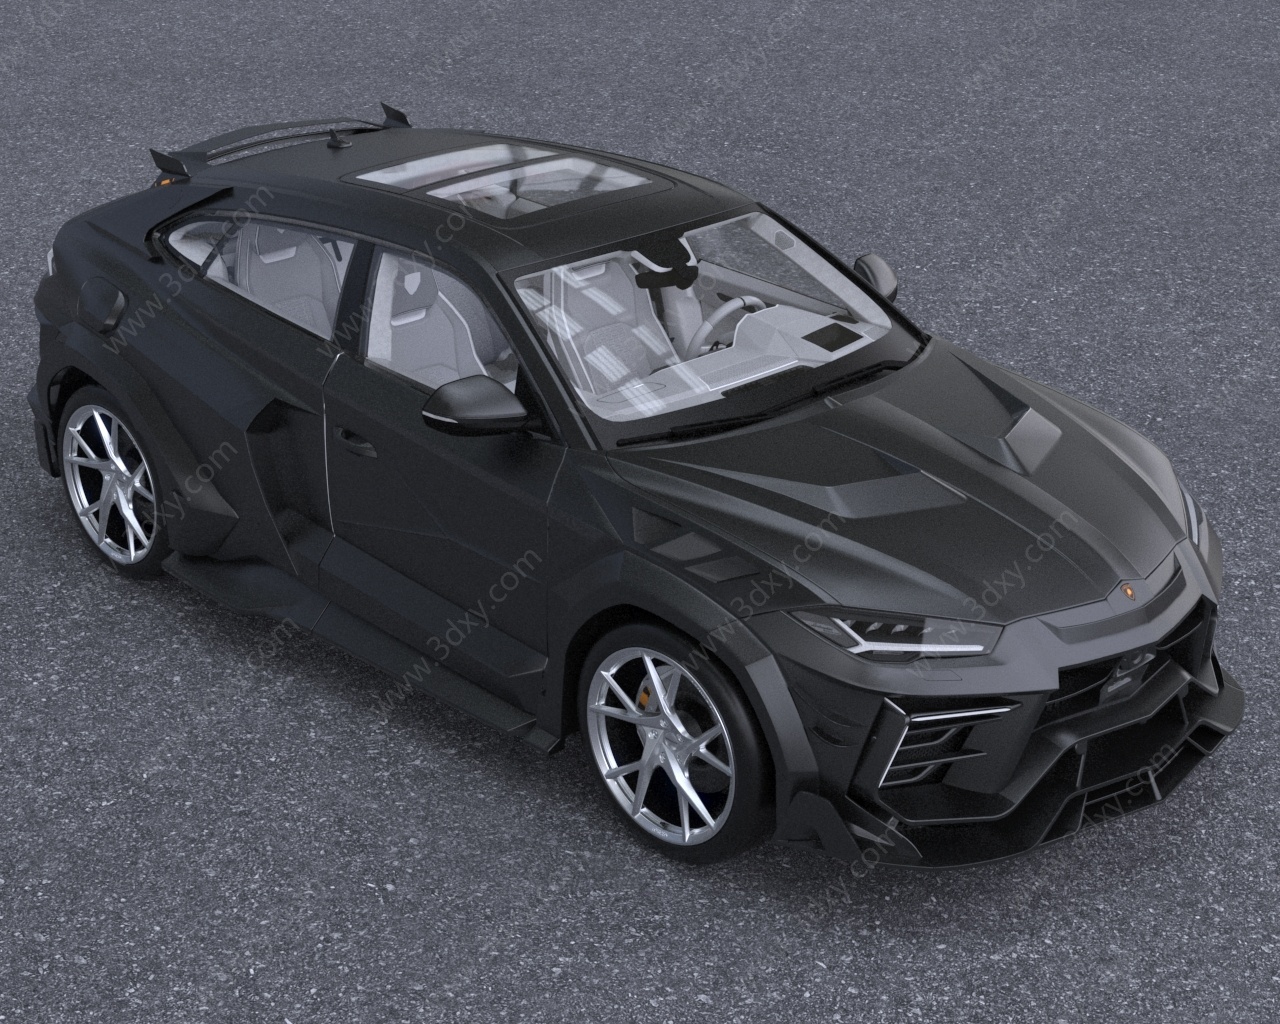 兰博基尼迈沙锐汽车低配版3D模型